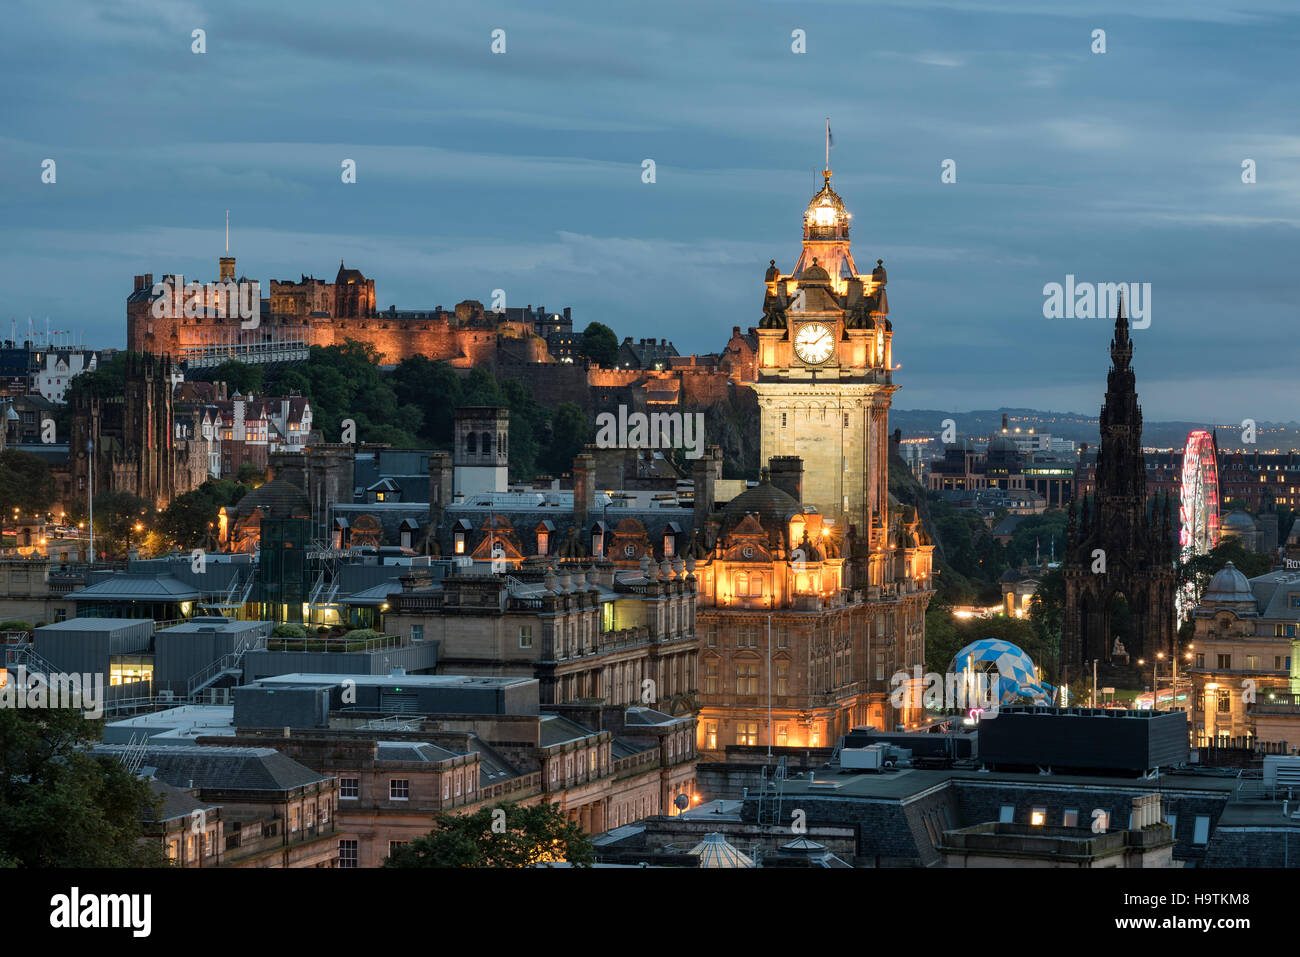 Ansicht der Altstadt von Edinburgh mit Balmoral Hotel Turm und Edinburgh Castle, Edinburgh, Schottland, Vereinigtes Königreich Stockfoto